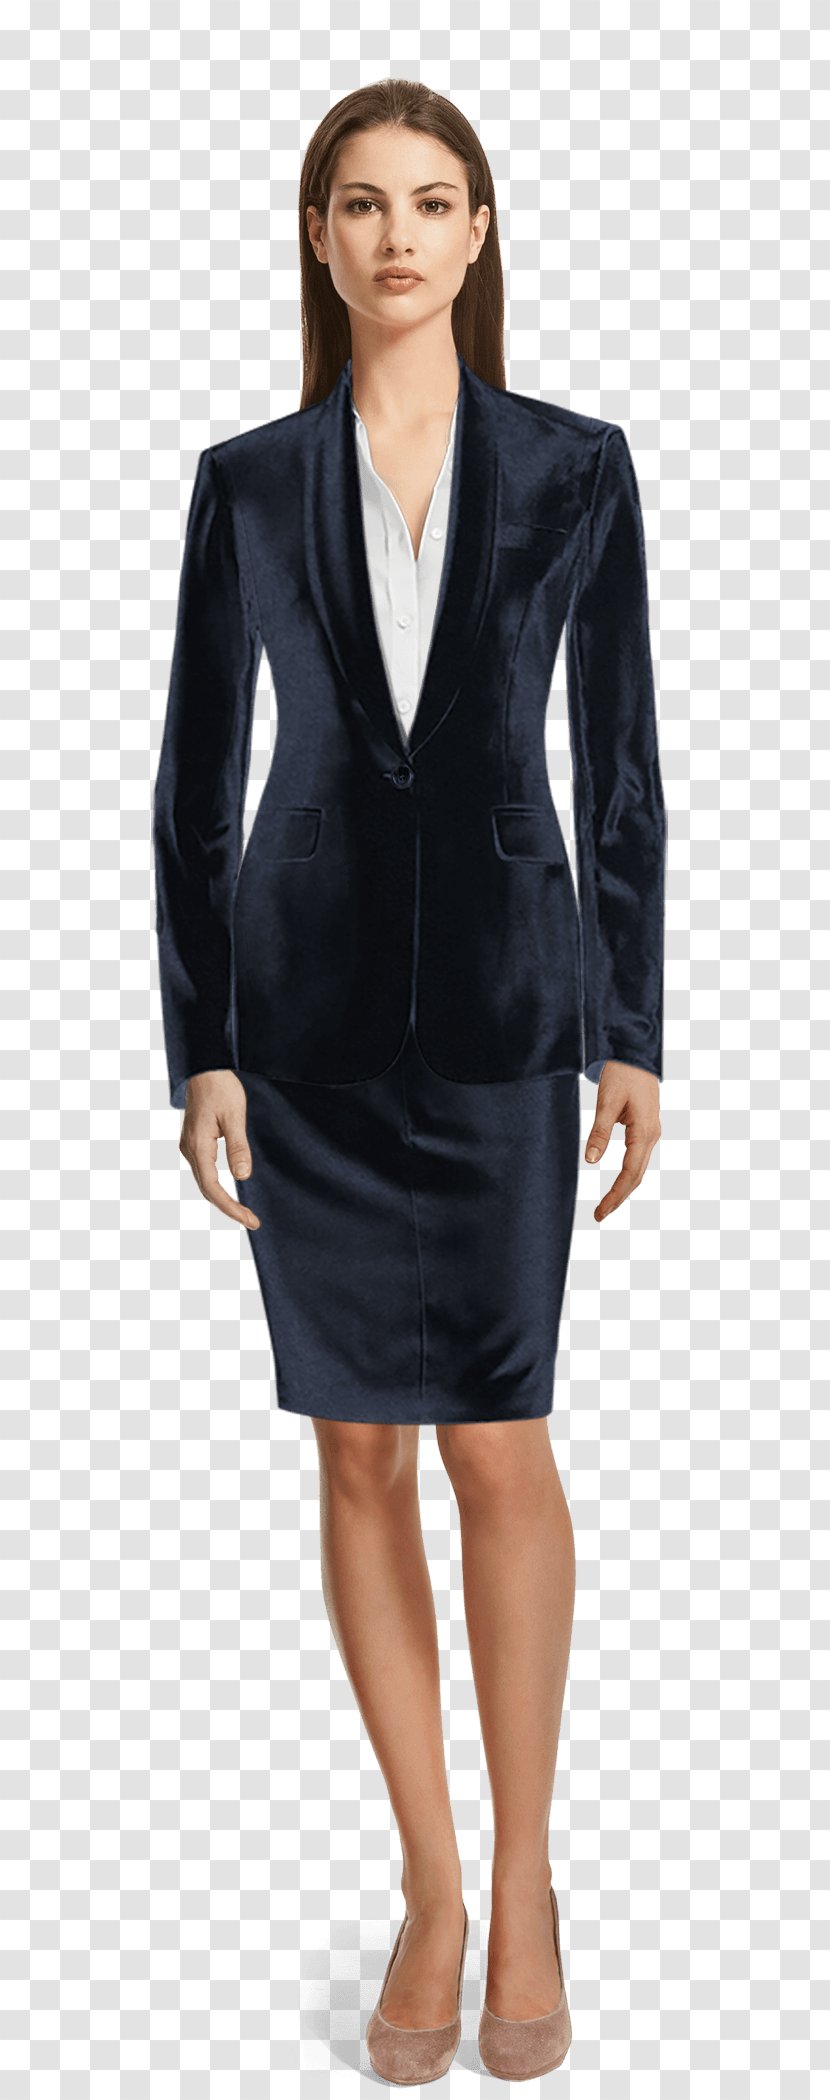 Tuxedo Suit Jakkupuku Tailor Clothing - Pant Suits - FEMALE SUIT Transparent PNG